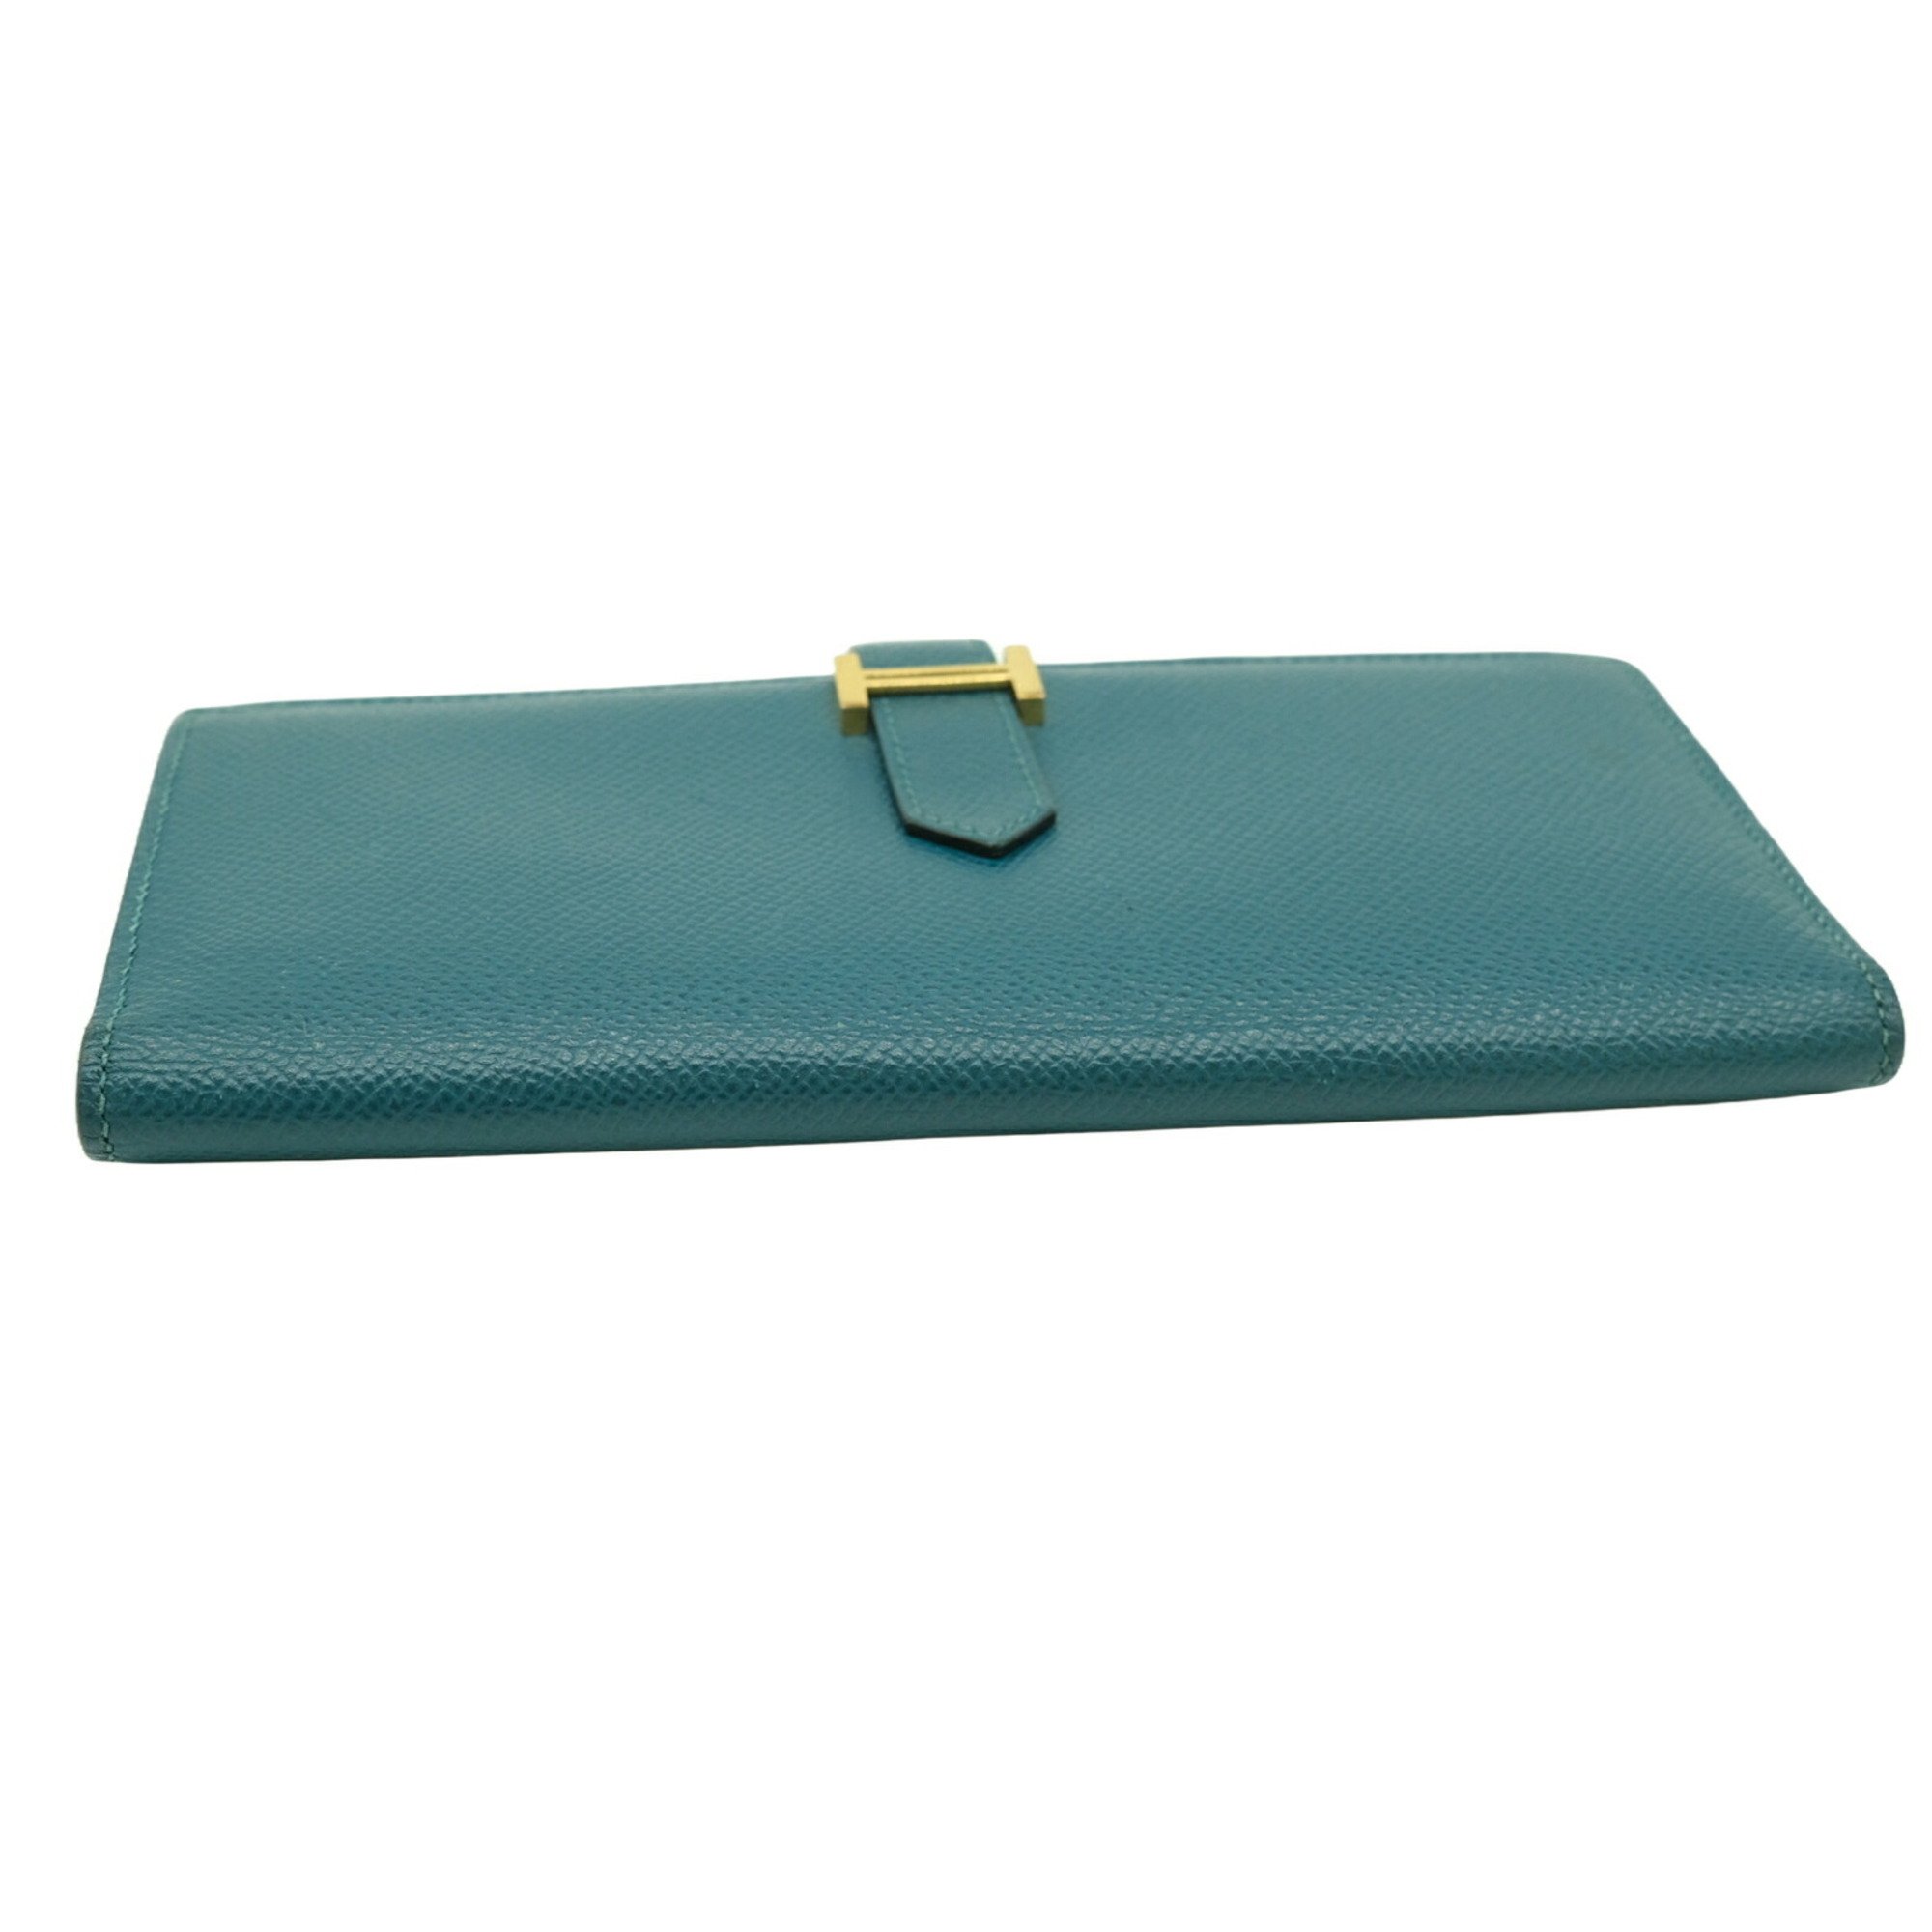 HERMES Bearn Soufflet Long Wallet Epsom Bicolor Blue